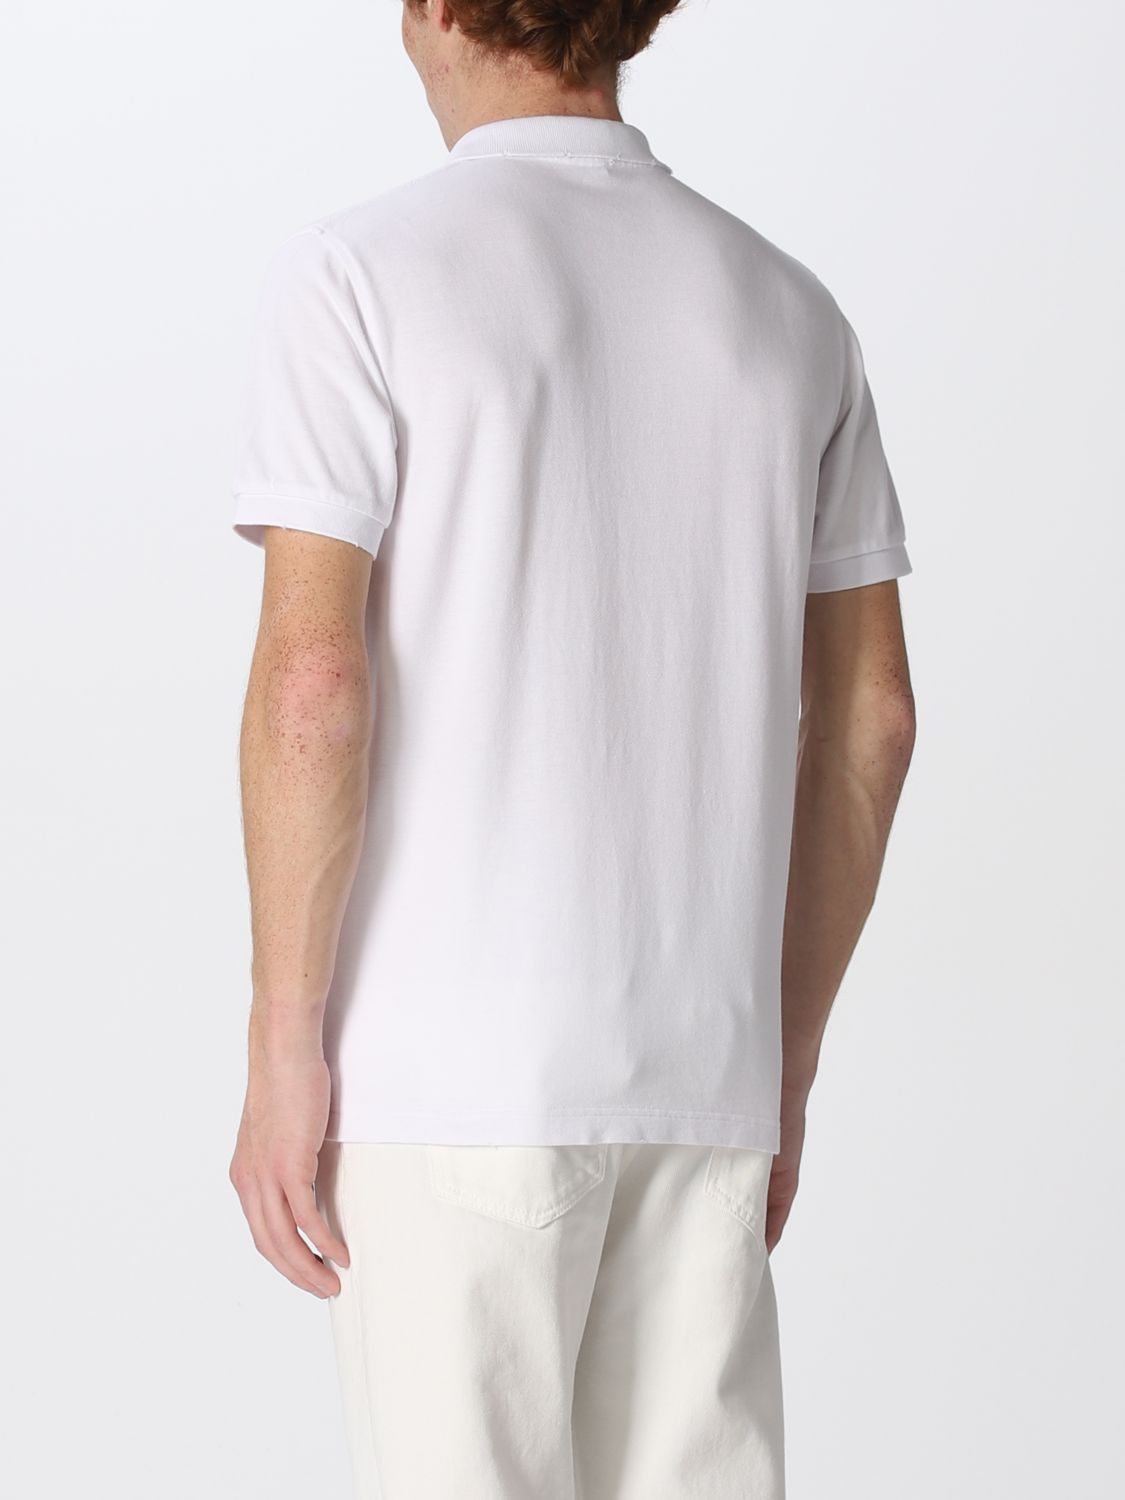 Polo shirt Sun 68: Sun 68 polo shirt for men white 2